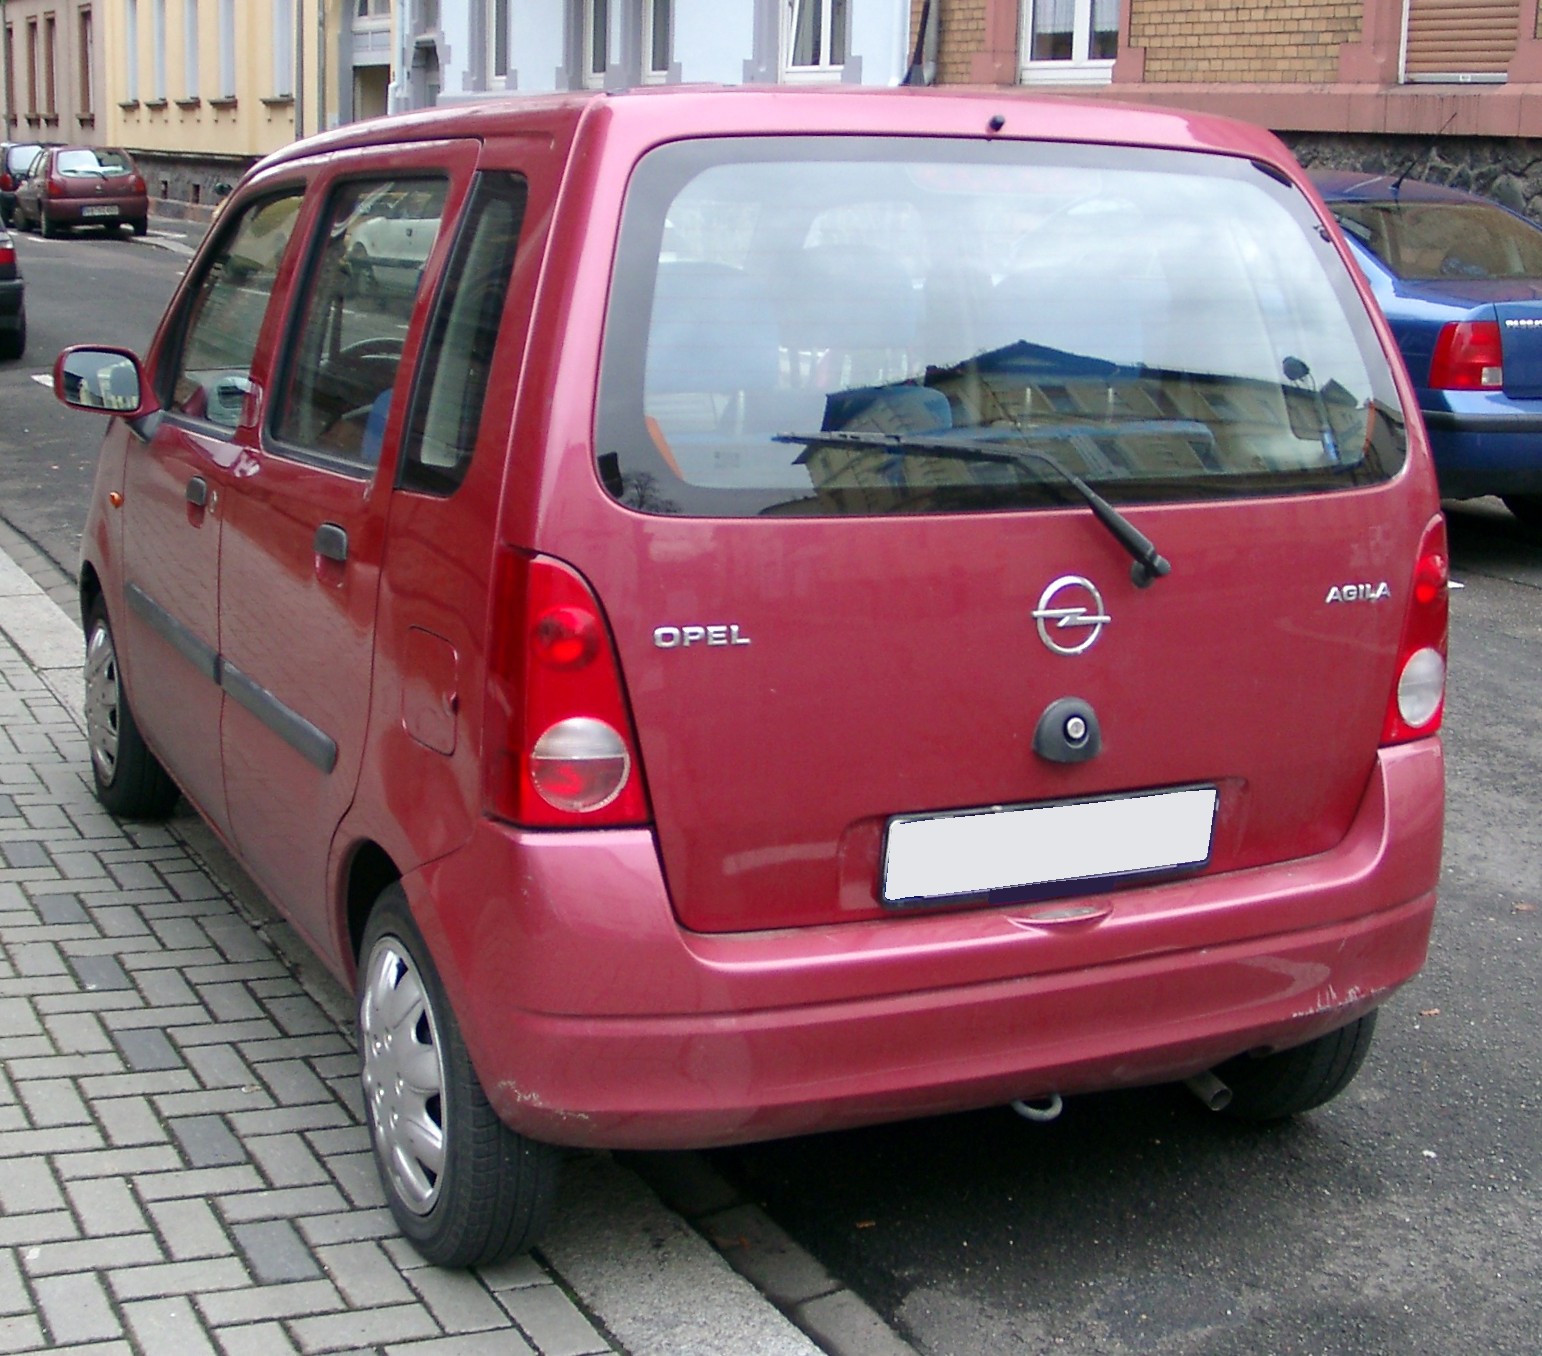 File:Opel Agila rear 20071204.jpg